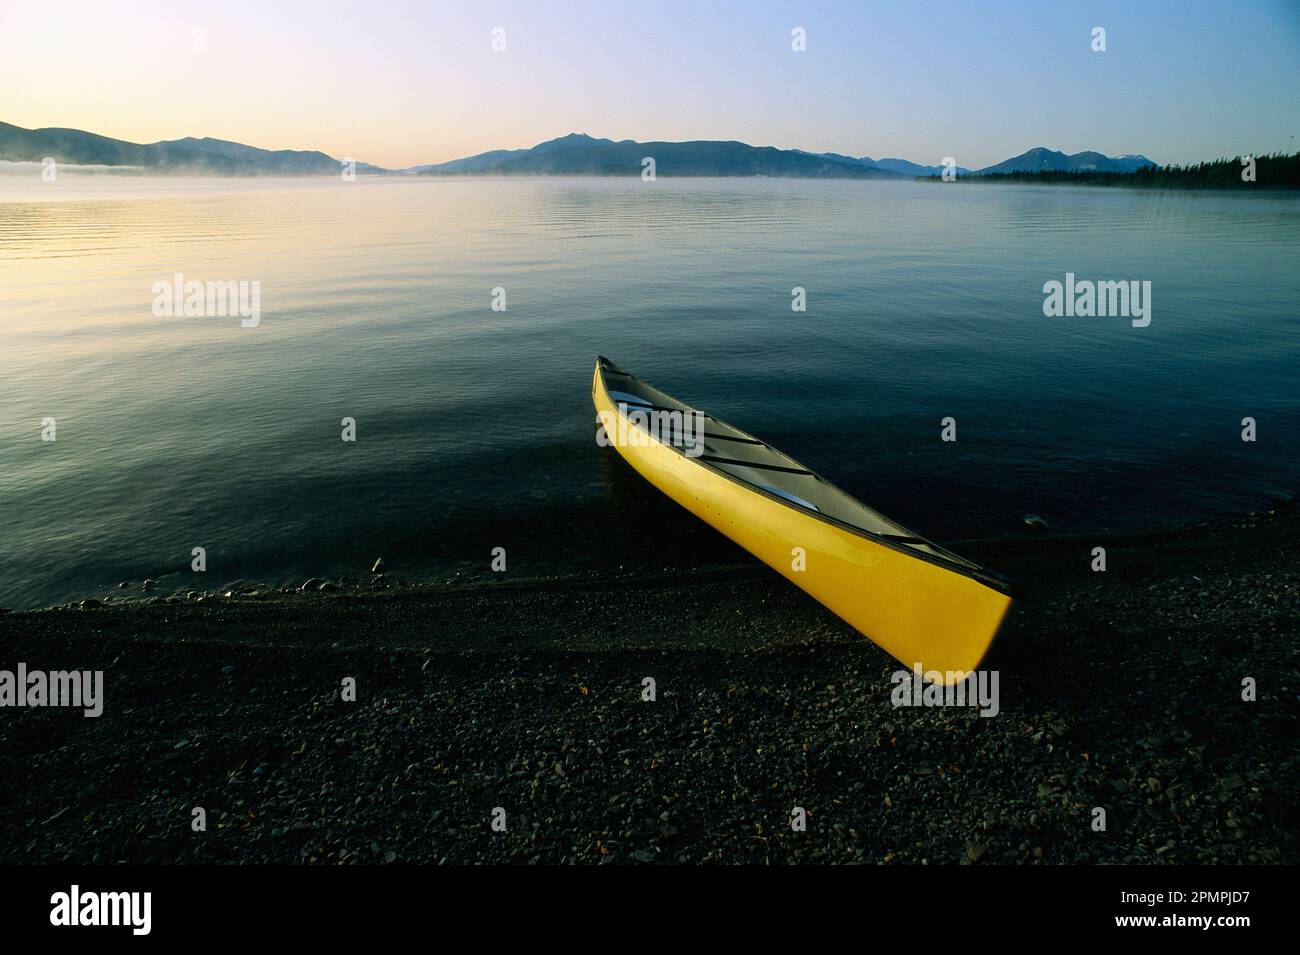 Canot jaune sur la rive d'un plan d'eau calme, lac Kluane, parc national Kluane, Yukon, Canada; Yukon, Canada Banque D'Images